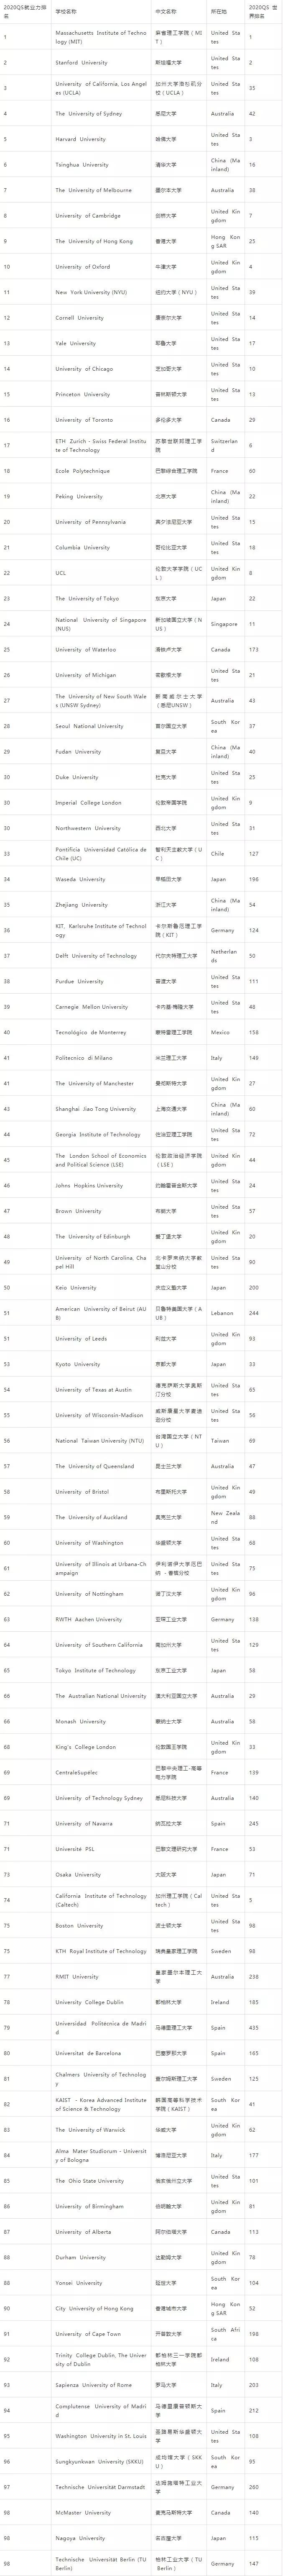 2020年QS世界大学就排名_2020年QS世界大学生物科学专业排名TOP100